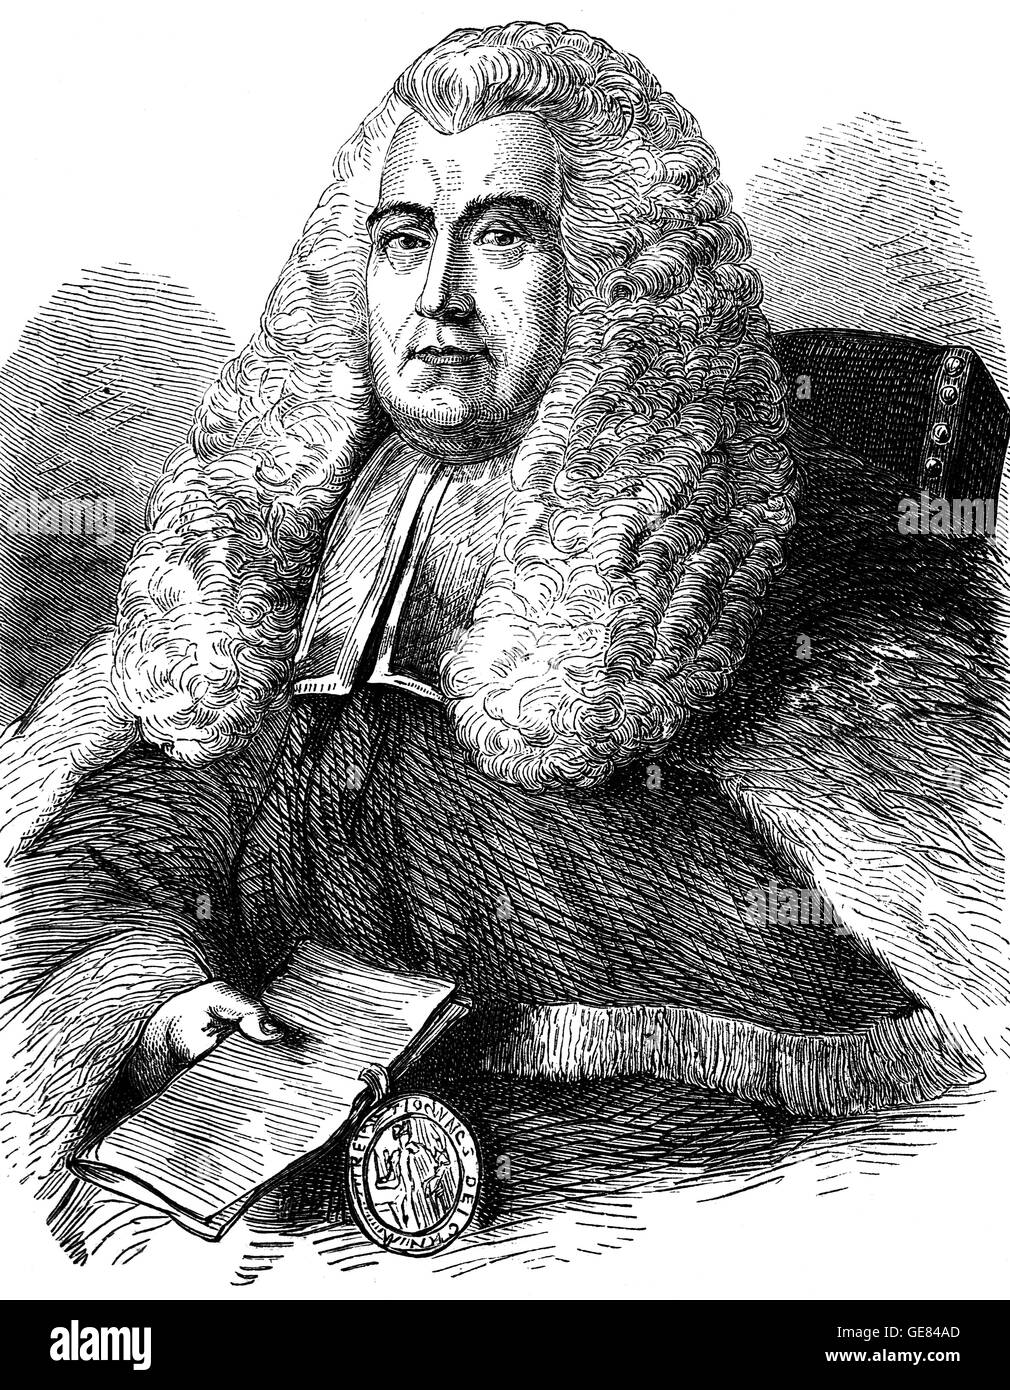 Sir William Blackstone (1723 – 1780) war ein englischer Jurist, Richter und Tory Politiker des achtzehnten Jahrhunderts. Seine primäre Vermächtnis ist seine schriftliche Arbeit, die Kommentare auf den Gesetzen von England. Nachfrage nach nachgedruckt, gekürzte und übersetzte Versionen war "fast unerschöpfliche" im 18. und 19. Jahrhundert. Stockfoto